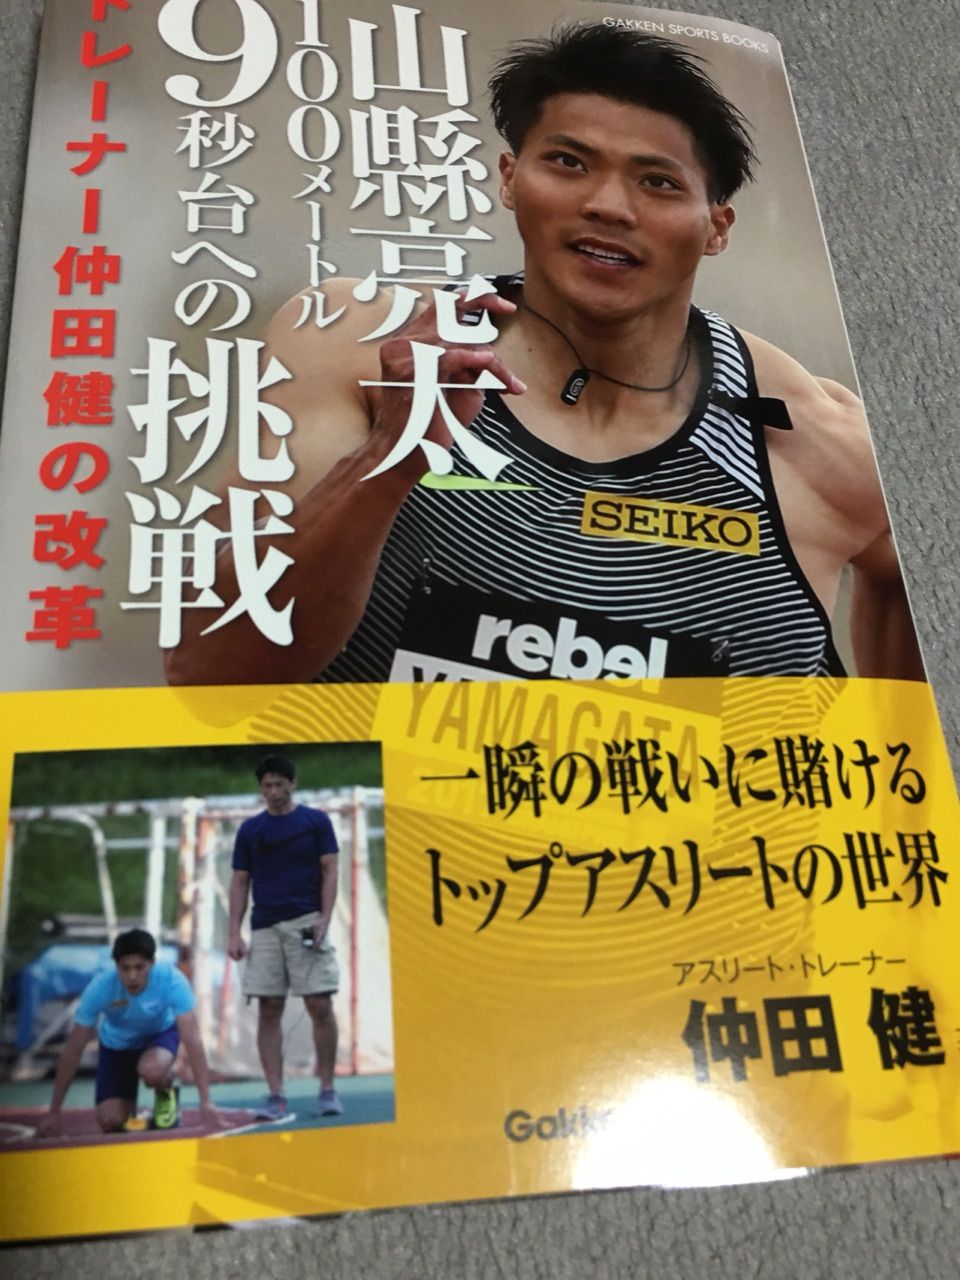 山縣亮太 100メートル 9秒台への挑戦 バーリトゥード日記